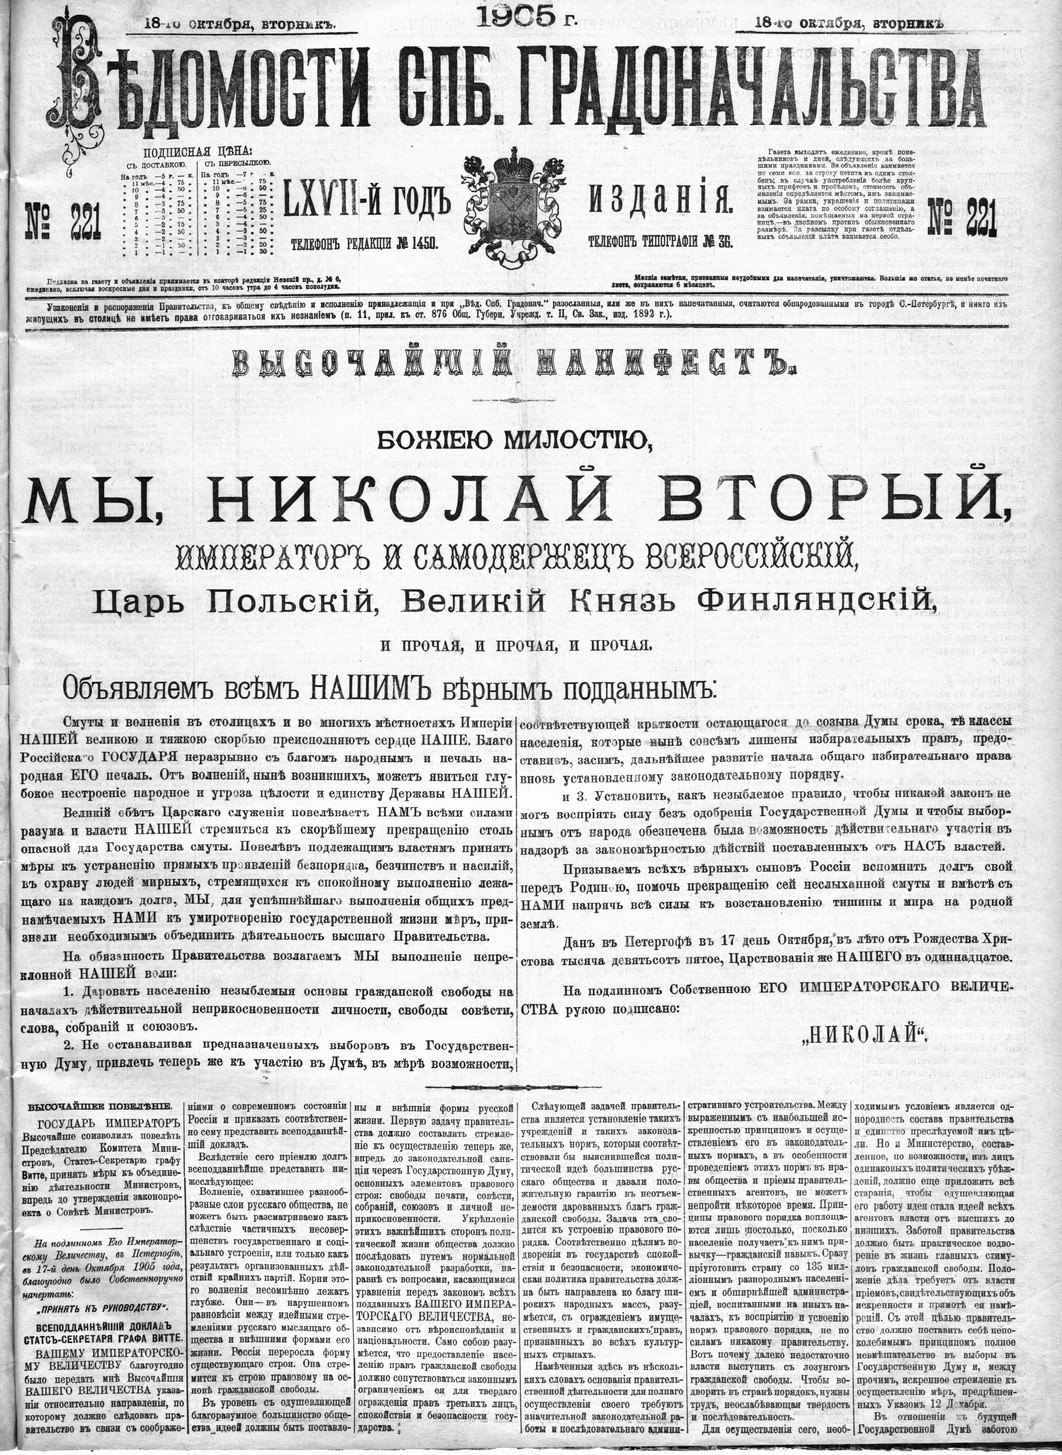 Фрагмент газеты "Ведомости СПБ градоначальства" за 18 октября 1905 года. 